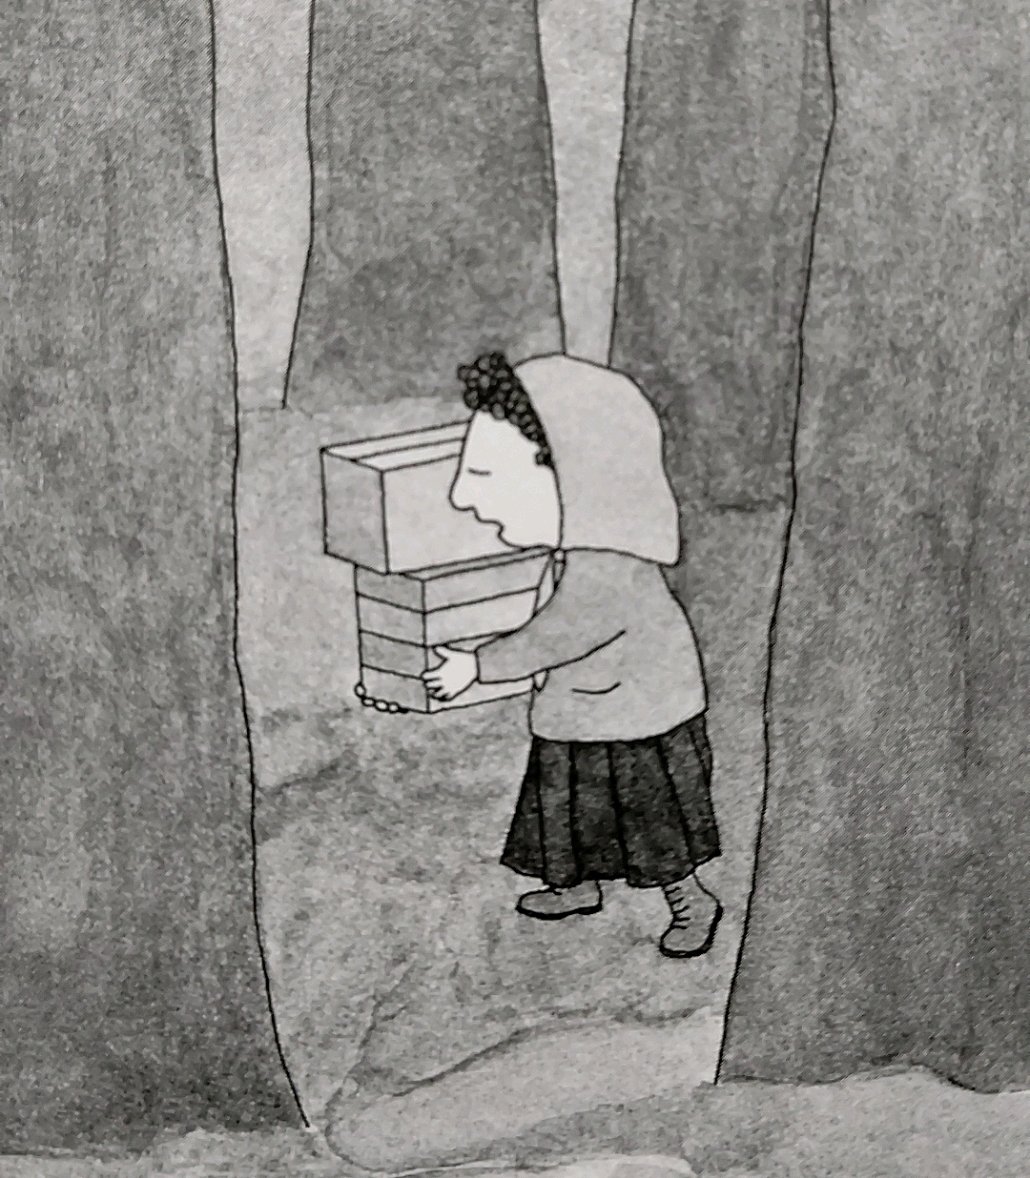 Belle ニューヨークの絵本作家ゴフスタイン 1940 17 彼女の作品の特徴は主人公が孤独であること そしてなにかものづくりに関わっていること ぼんやり牧歌的に幸福を提示する物語ではなく 求道の先に芸術による救済がある 人形づくりの素材と